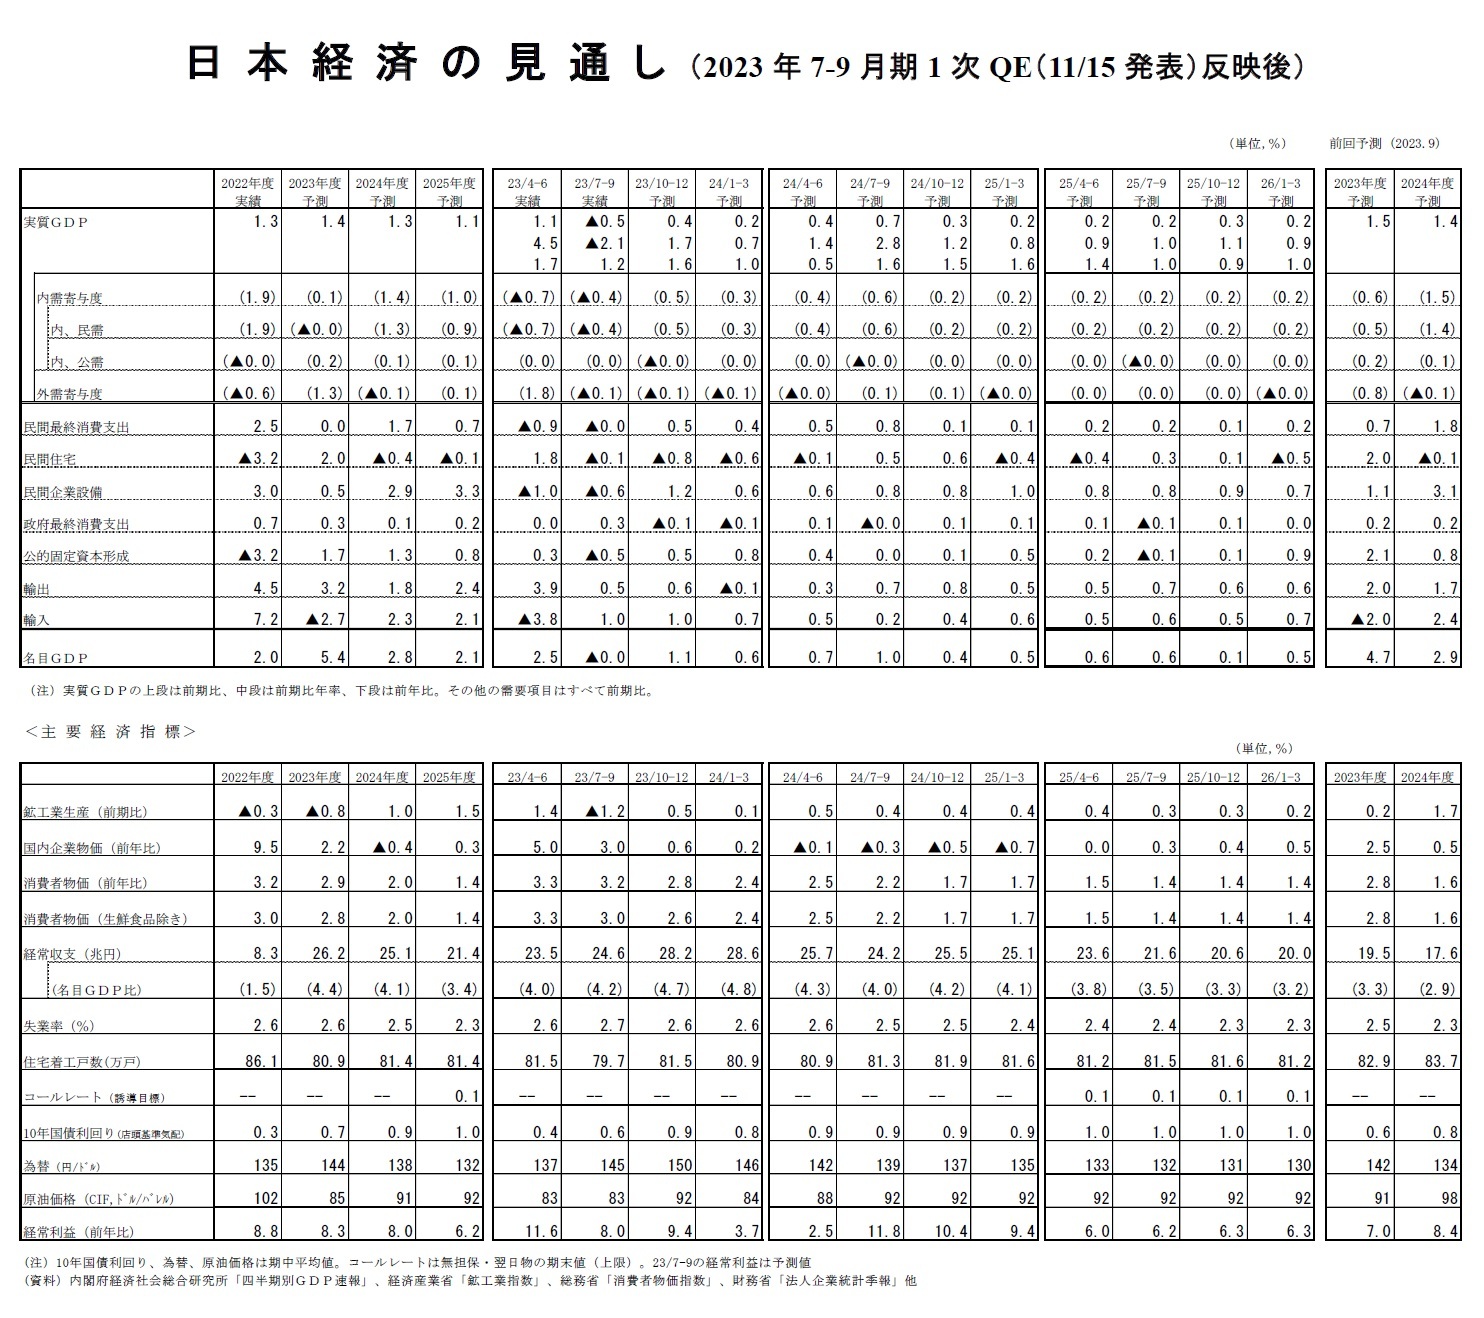 日本経済の見通し（2023年7-9月期1次QE（11/15発表）反映後）